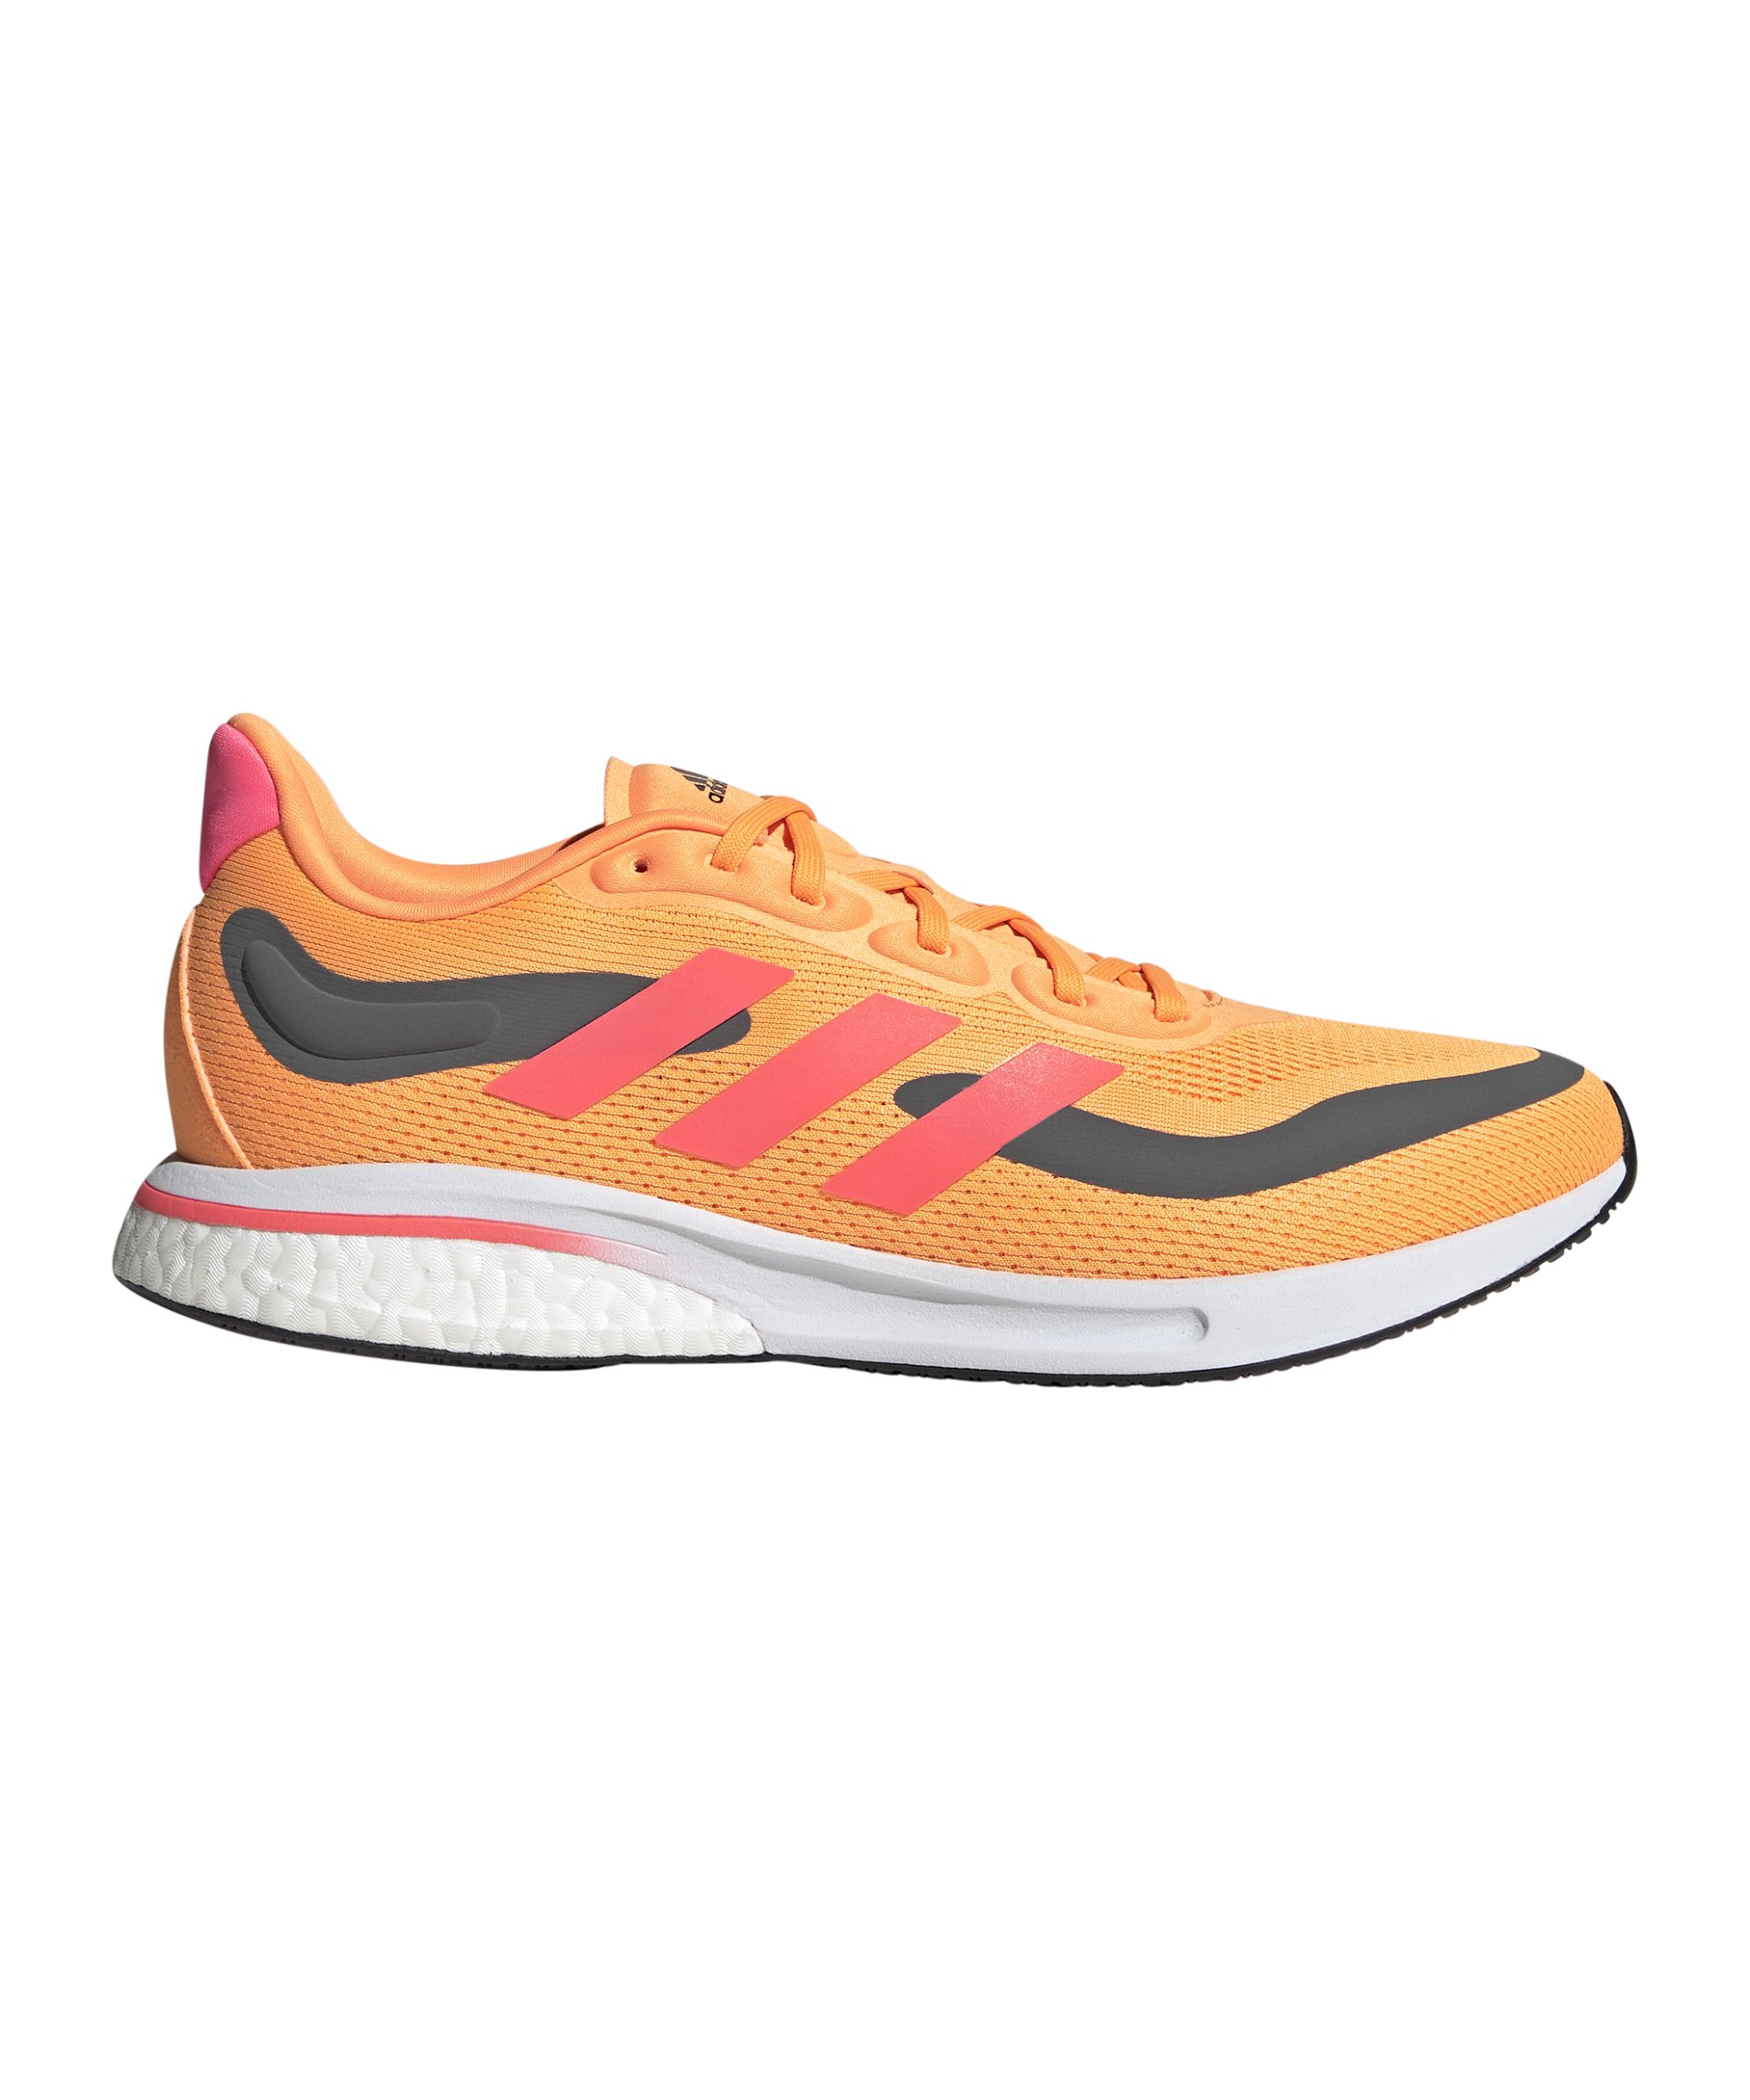 adidas Supernova Running Orange Pink - orange